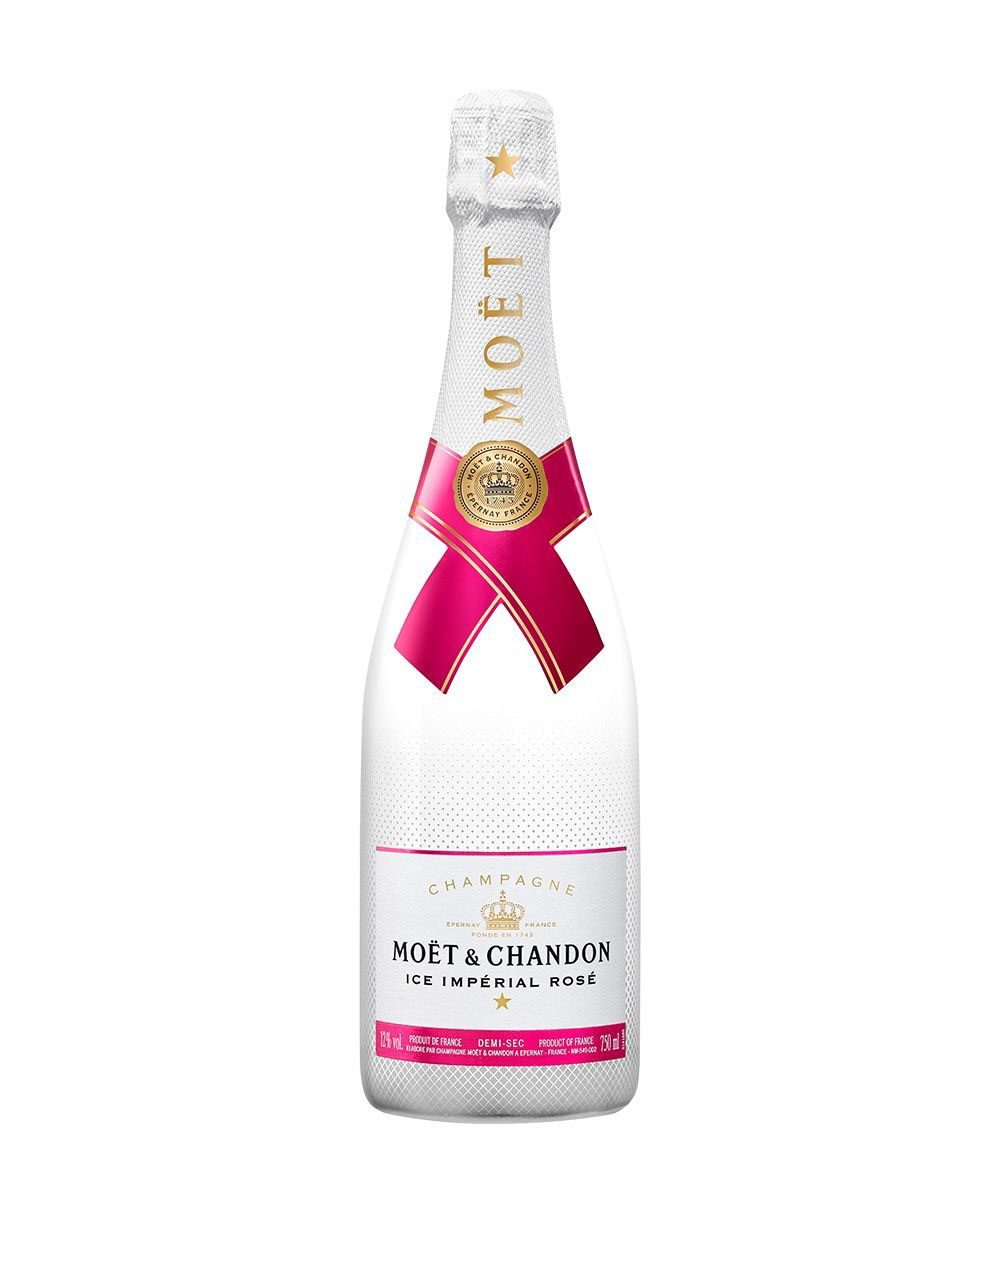 Louis Roederer Brut Cristal 2012 Champagne